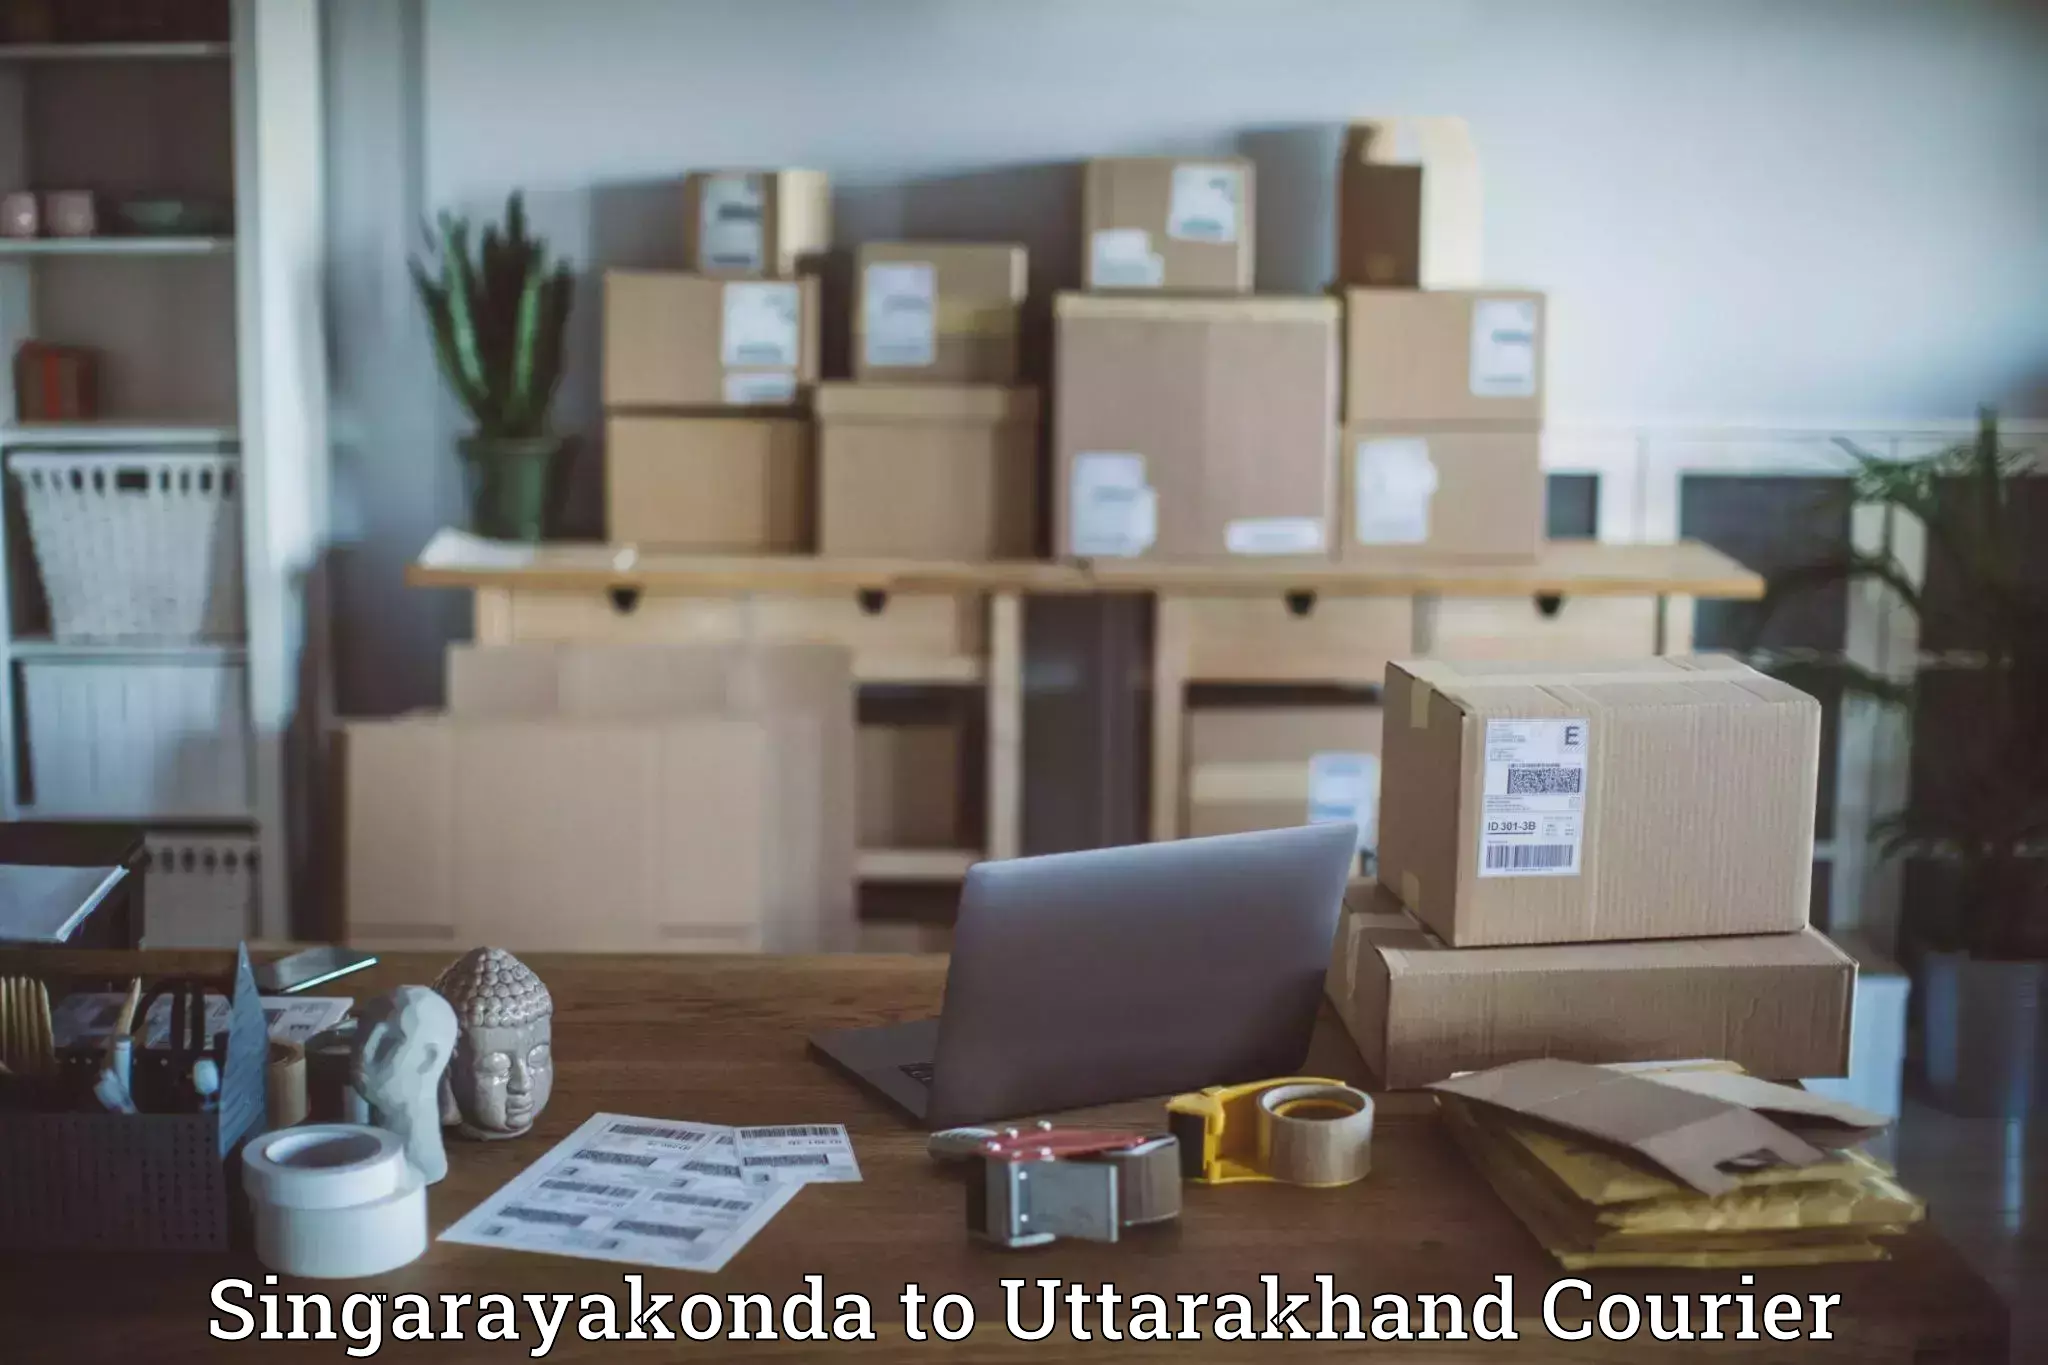 Same-day delivery solutions Singarayakonda to Kotdwara